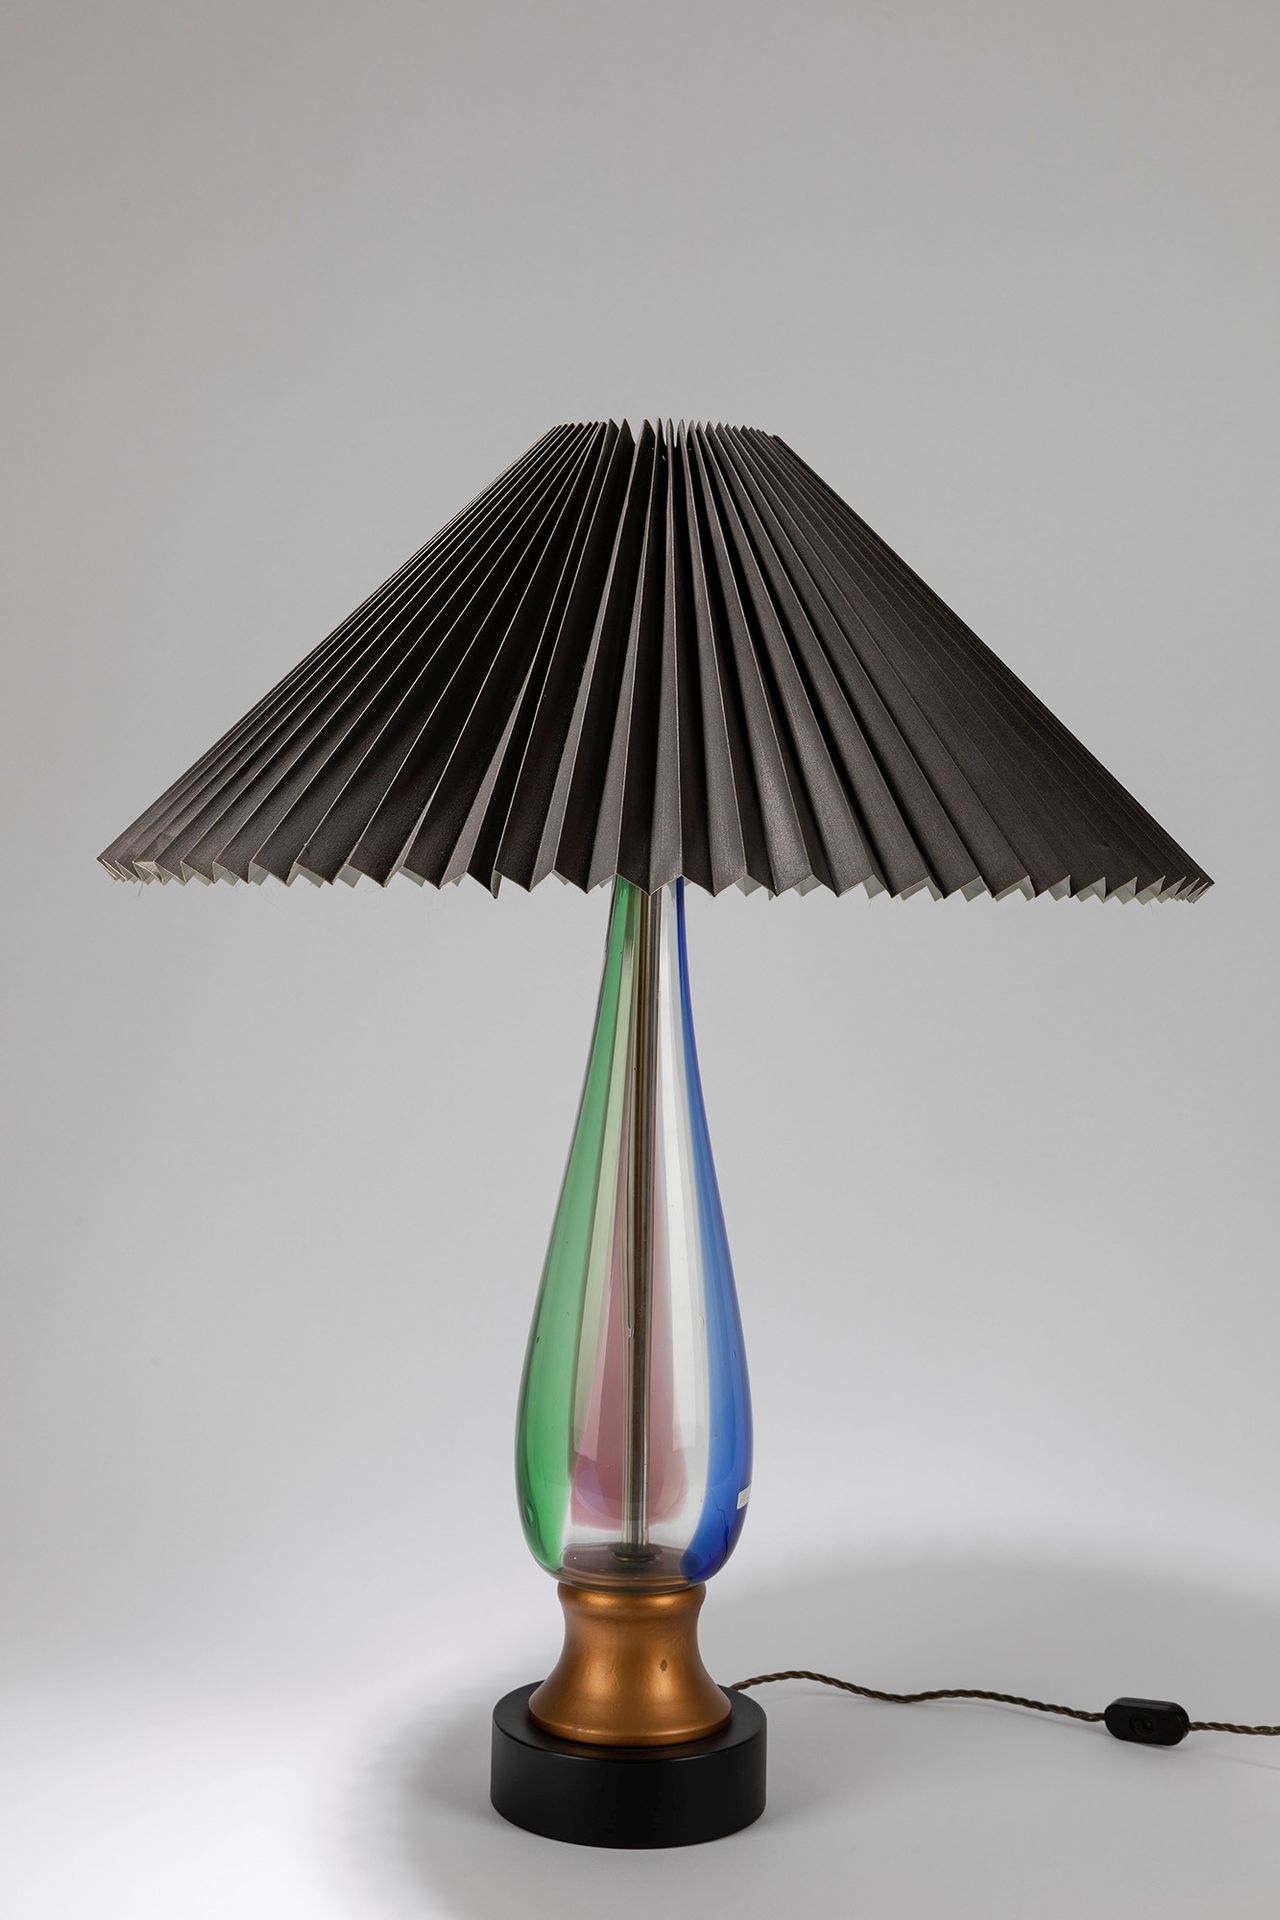 ITALIAN MANUFACTURE Lampe de table, ca. 1950.

H cm 80
verre soufflé polychrome.